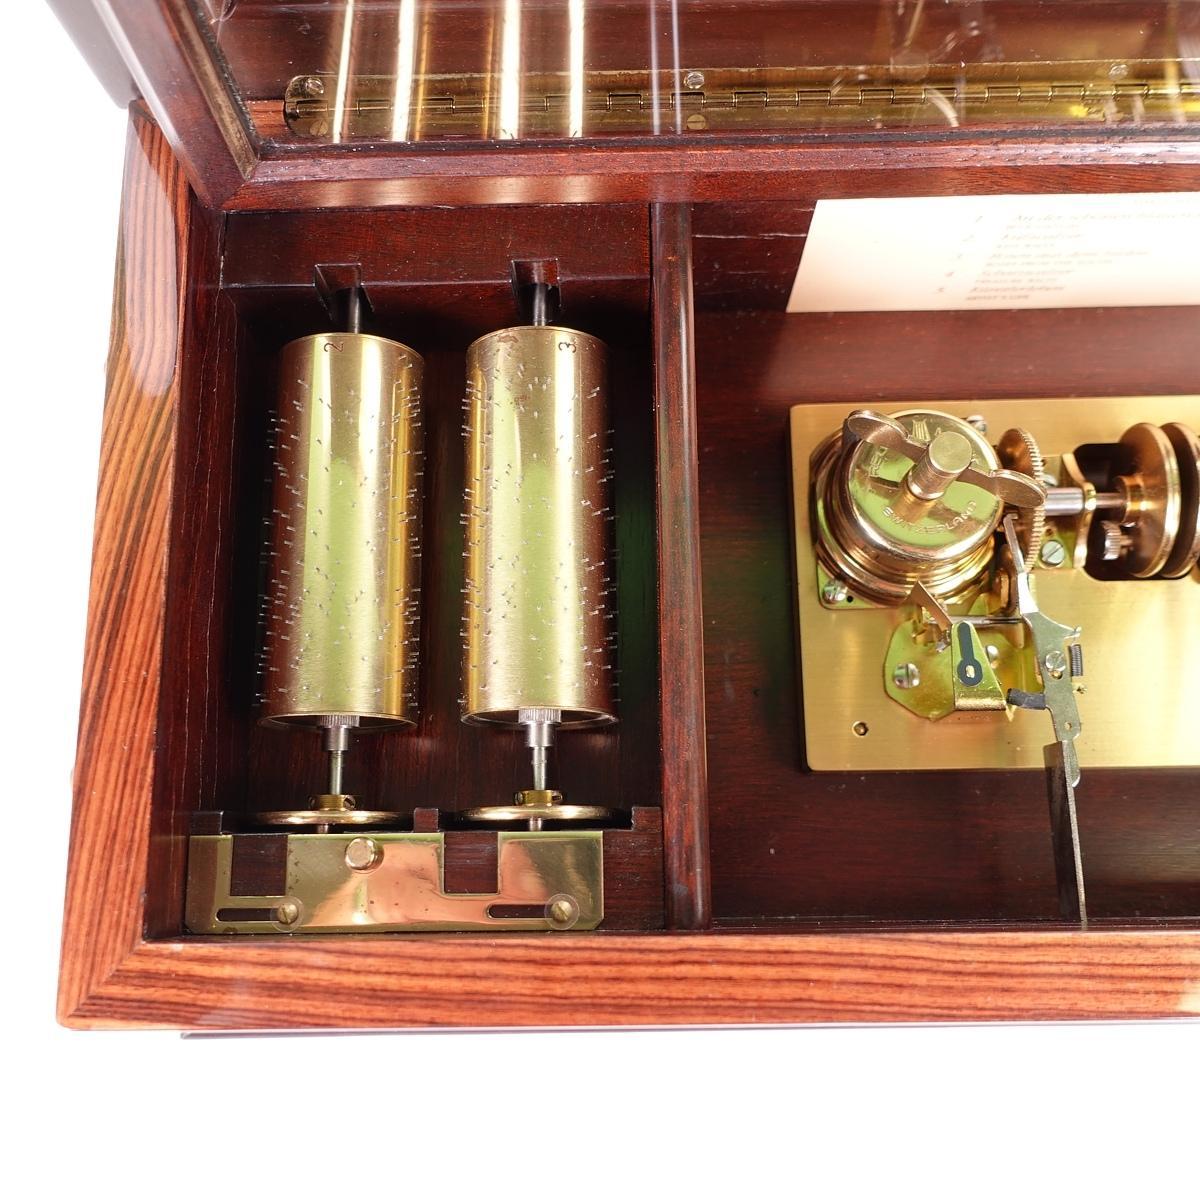 Inlay Johann Strauss Waltzes Five Cylinder Interchangeable Inlaid Music Box Ltd Ed